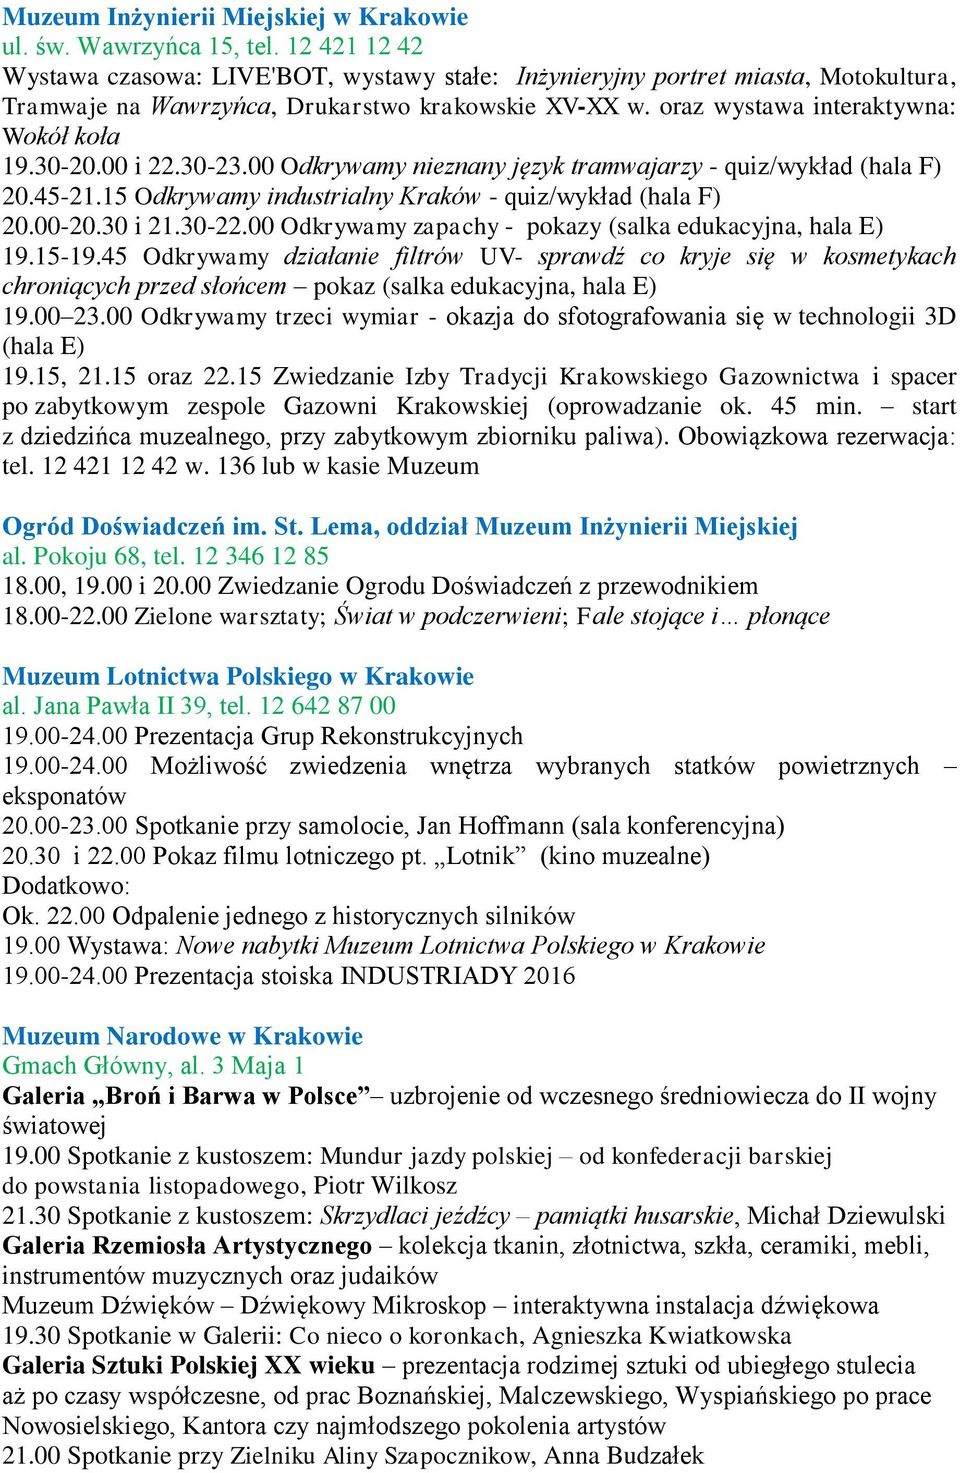 00 i 22.30-23.00 Odkrywamy nieznany język tramwajarzy - quiz/wykład (hala F) 20.45-21.15 Odkrywamy industrialny Kraków - quiz/wykład (hala F) 20.00-20.30 i 21.30-22.